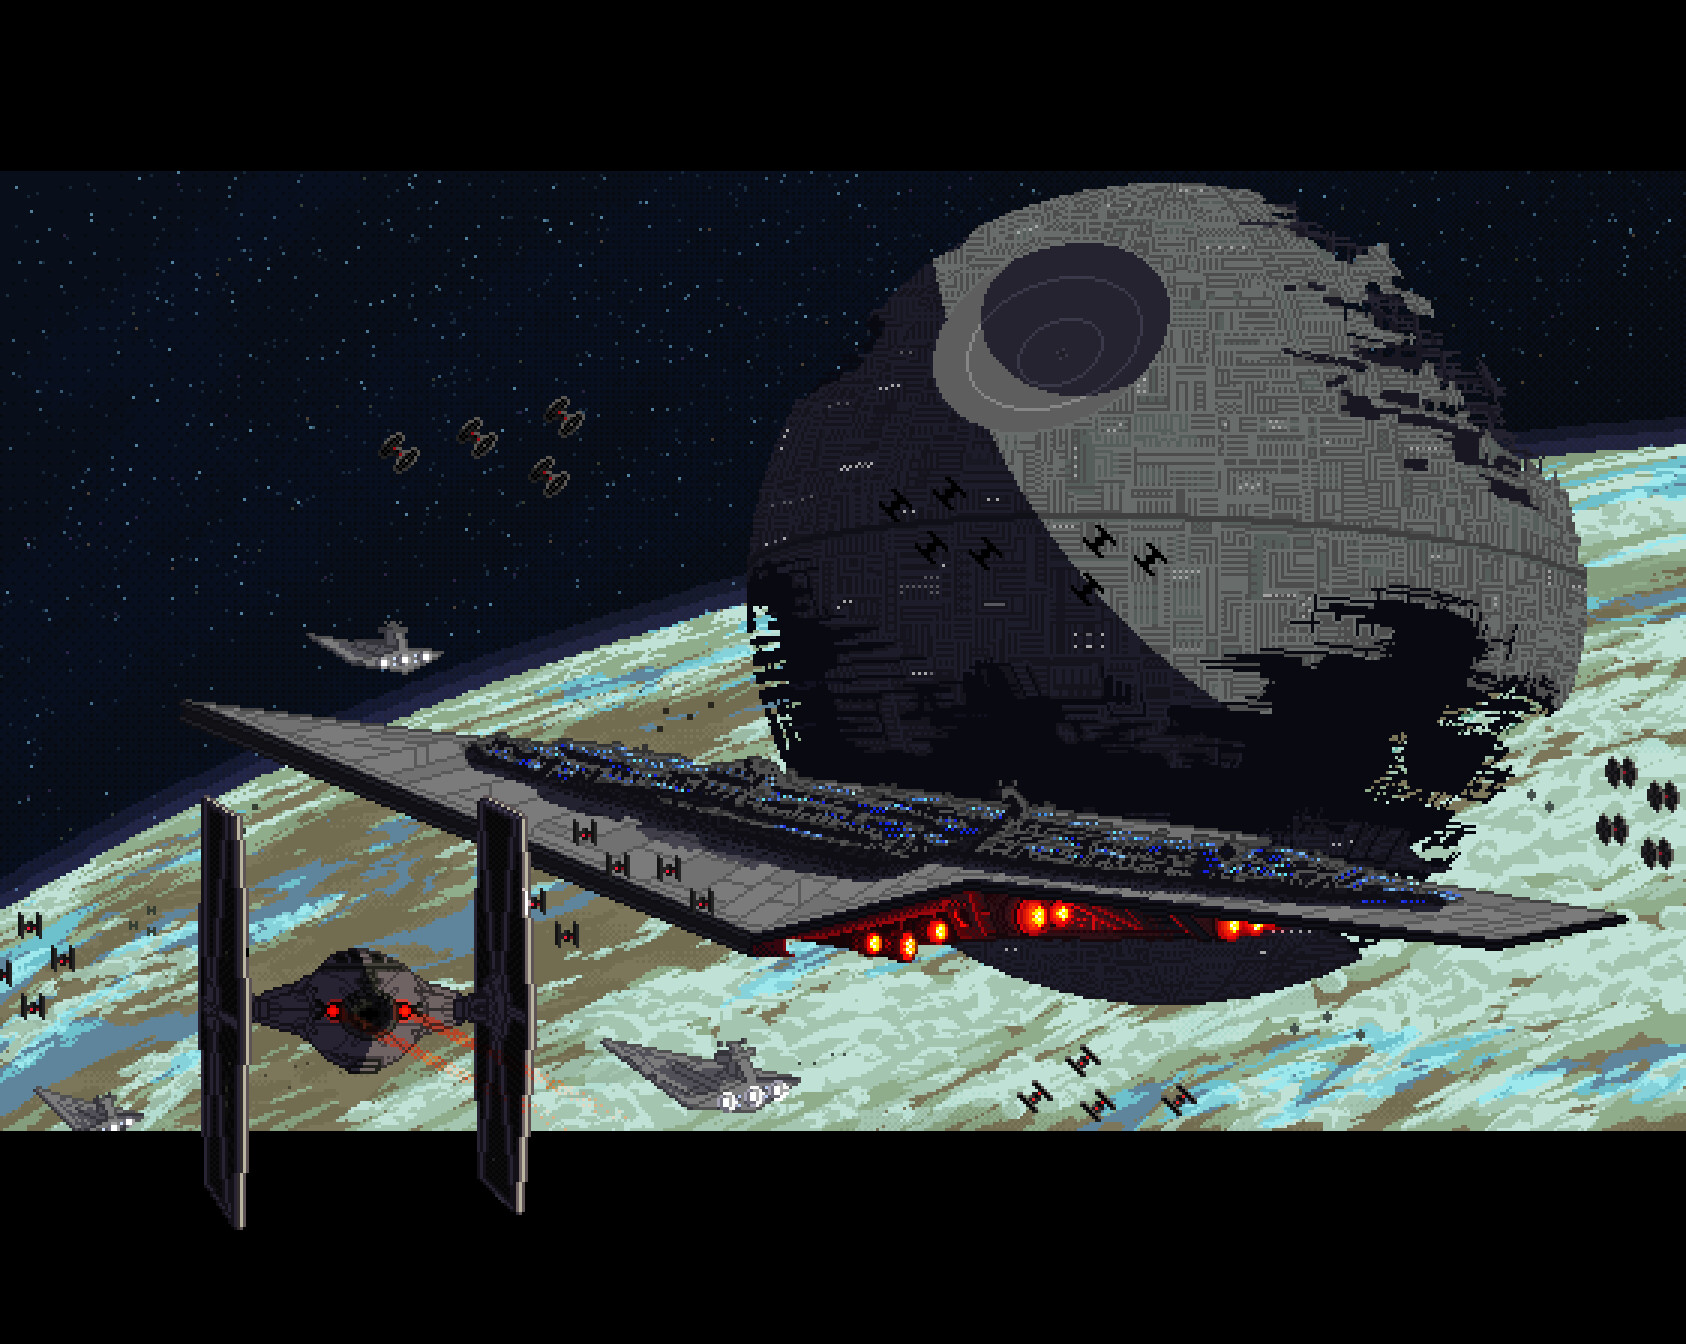 General 1686x1344 artwork digital art Star Wars Death Star pixel art fantasy art Super Star Destroyer TIE Fighter